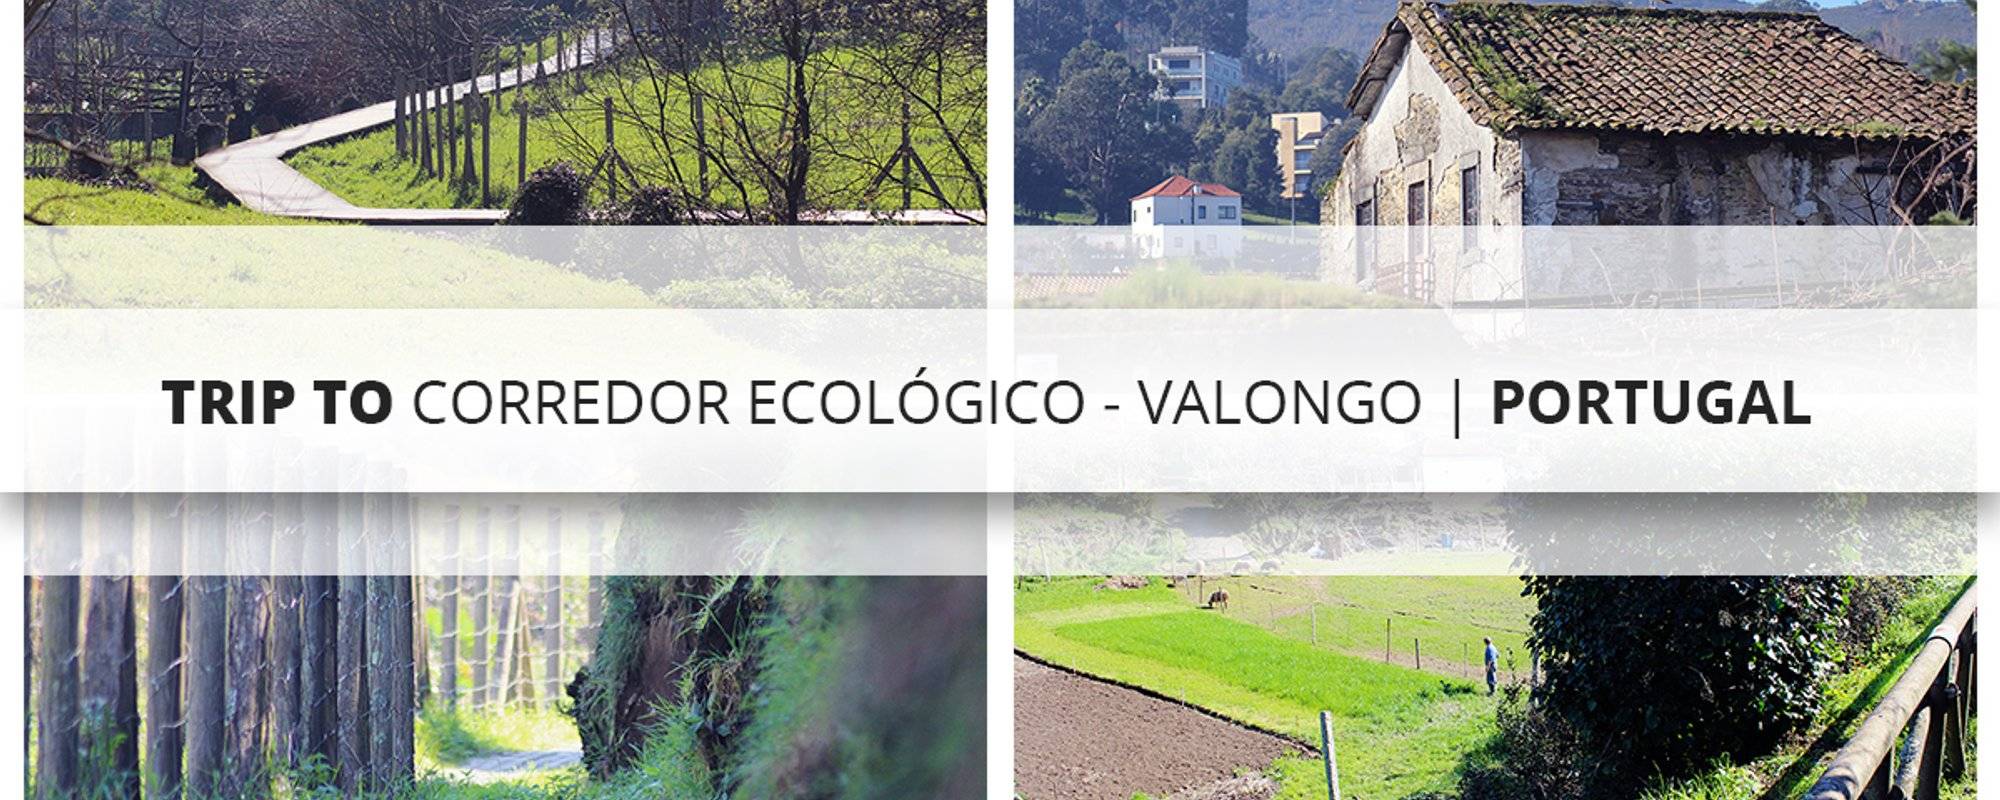 Trip to Corredor Ecológico - Valongo | Portugal